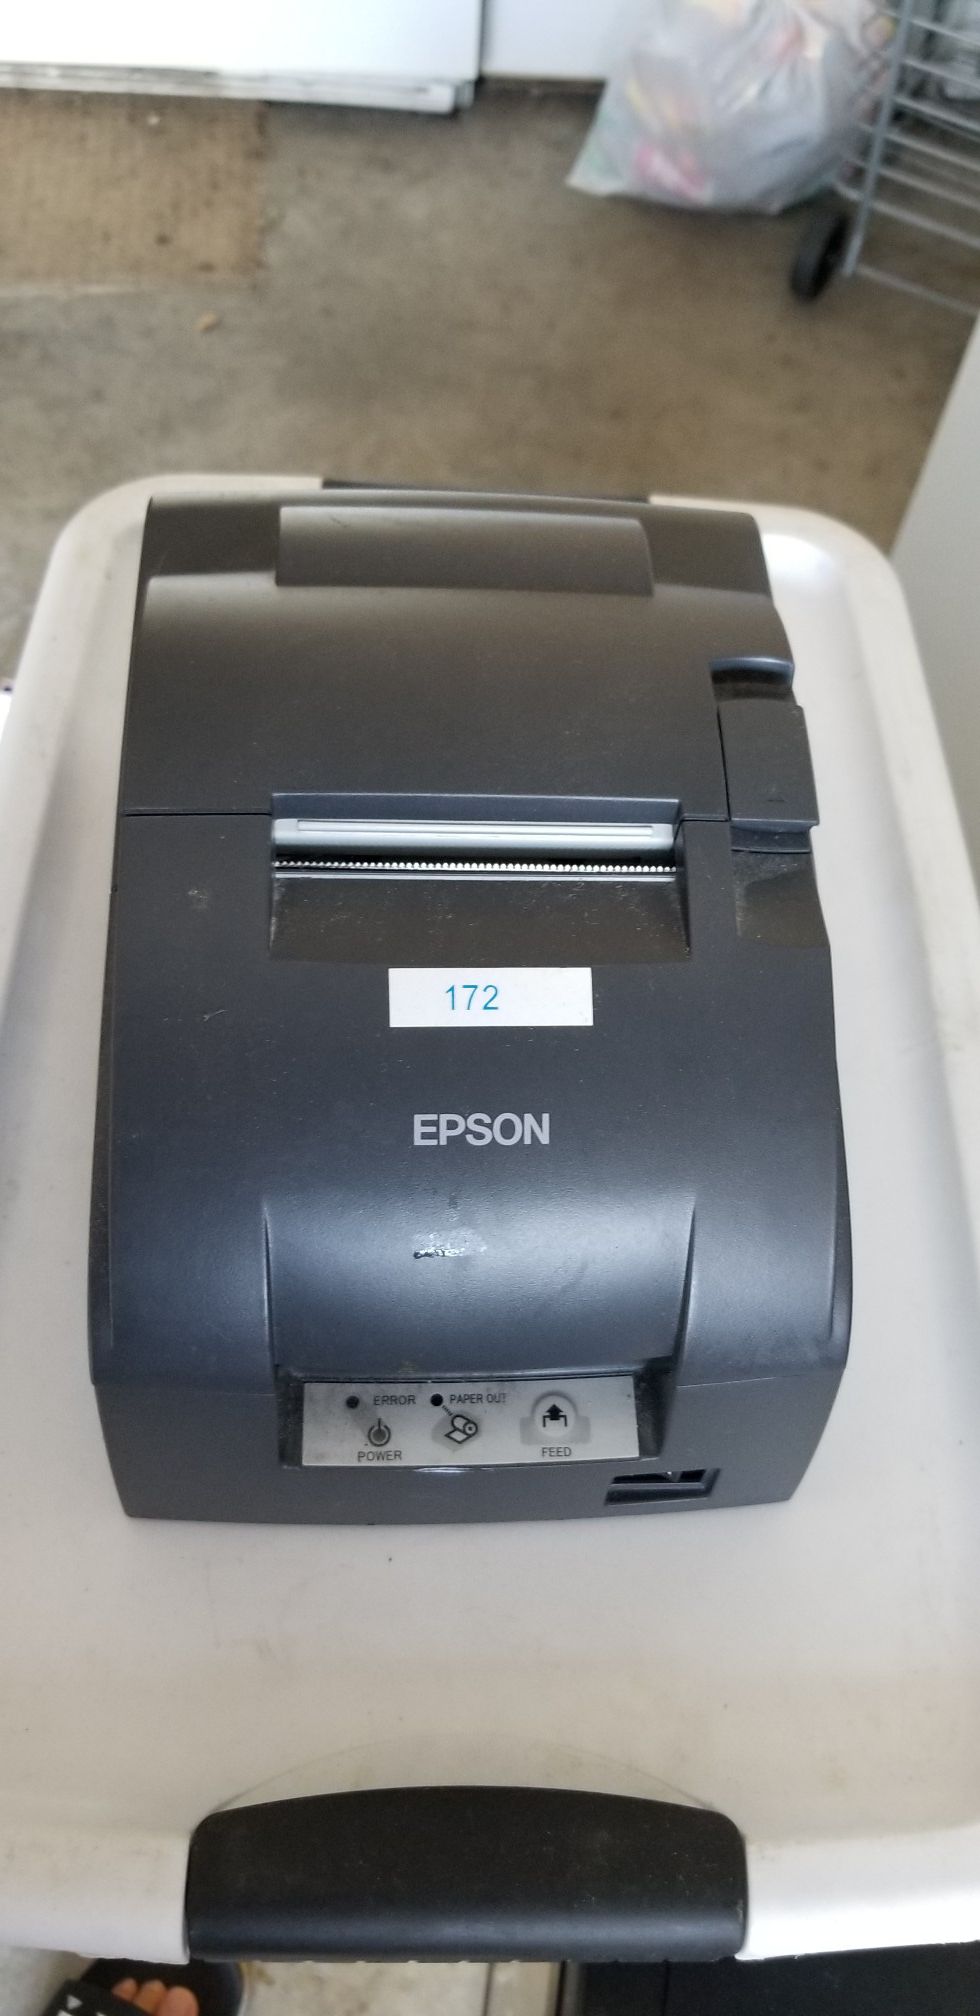 Epson POS receipt printer